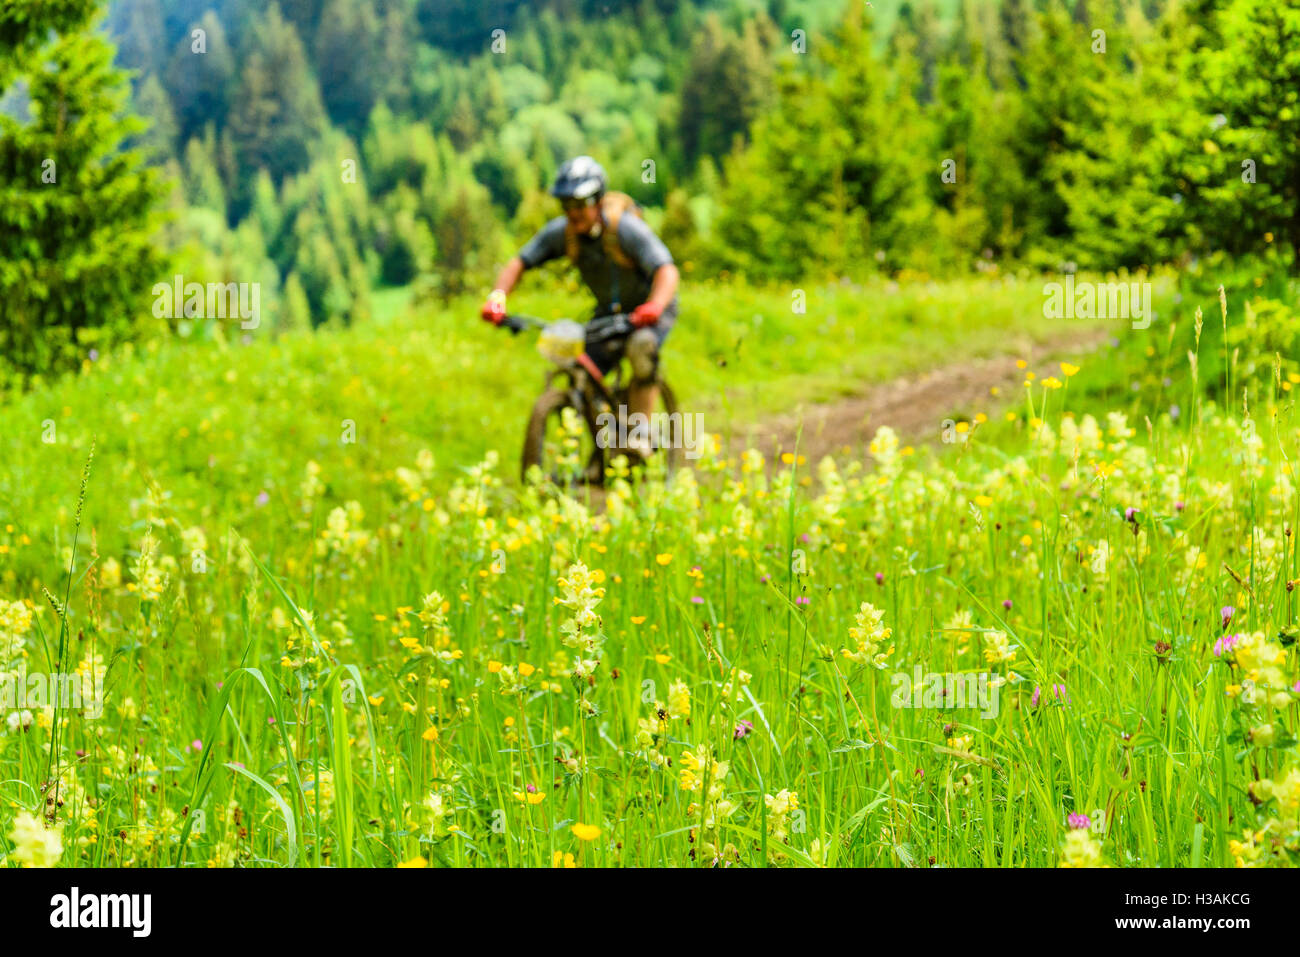 Fahrer, die Teilnahme an Pass'Portes du Soleil MTB 2016 ein Mountain-Bike-Event in der französisch-schweizerischen Grenze Stockfoto